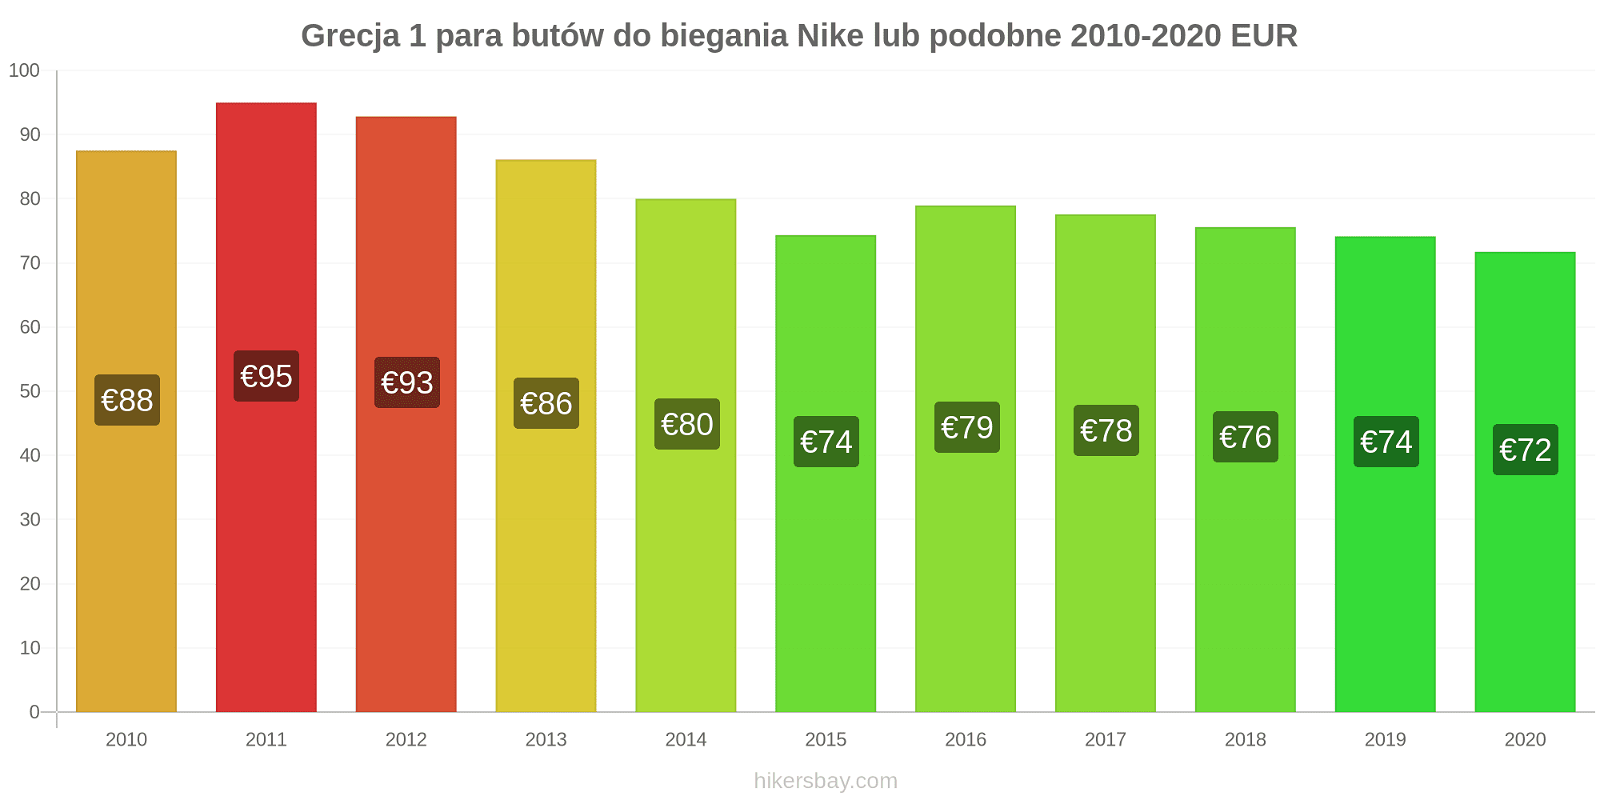 Grecja zmiany cen 1 para butów do biegania Nike lub podobne hikersbay.com